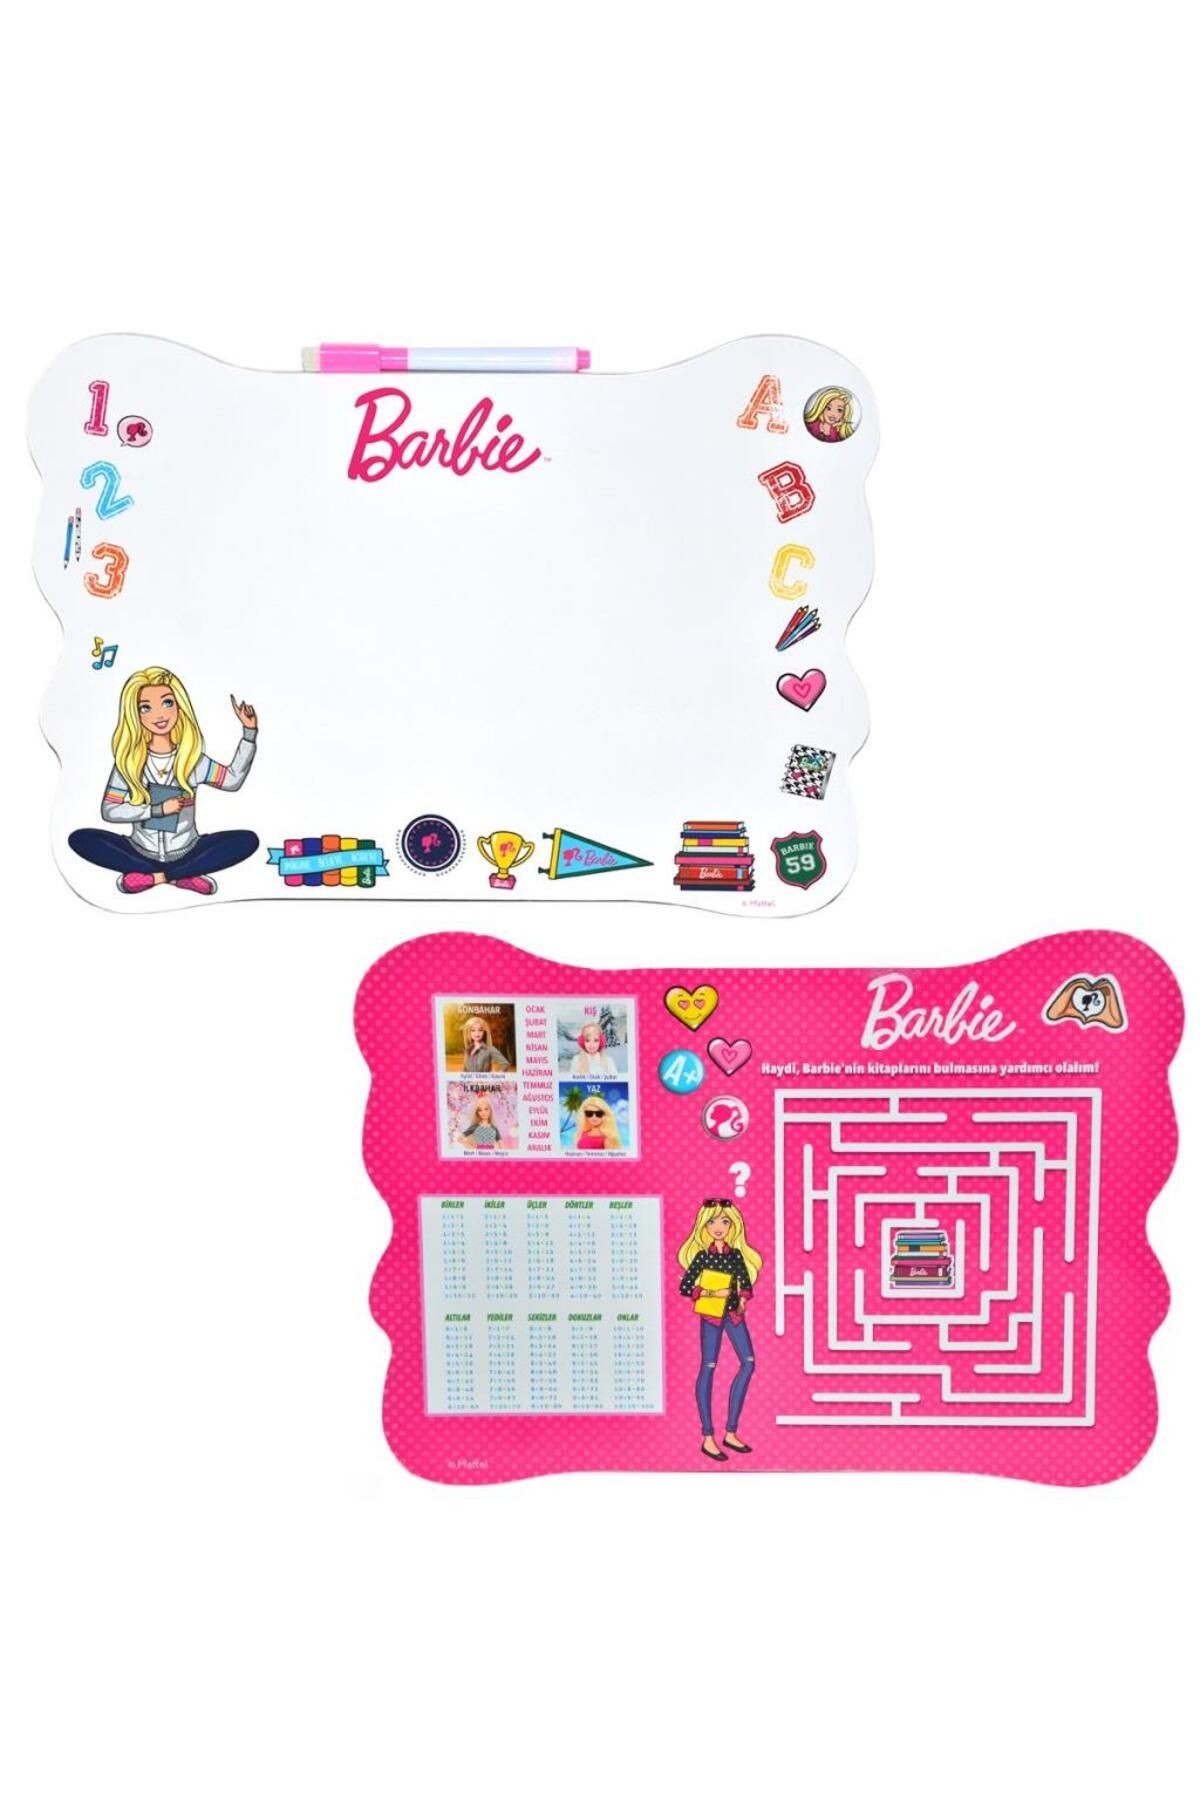 Barbie Eva Yazı Tahtası